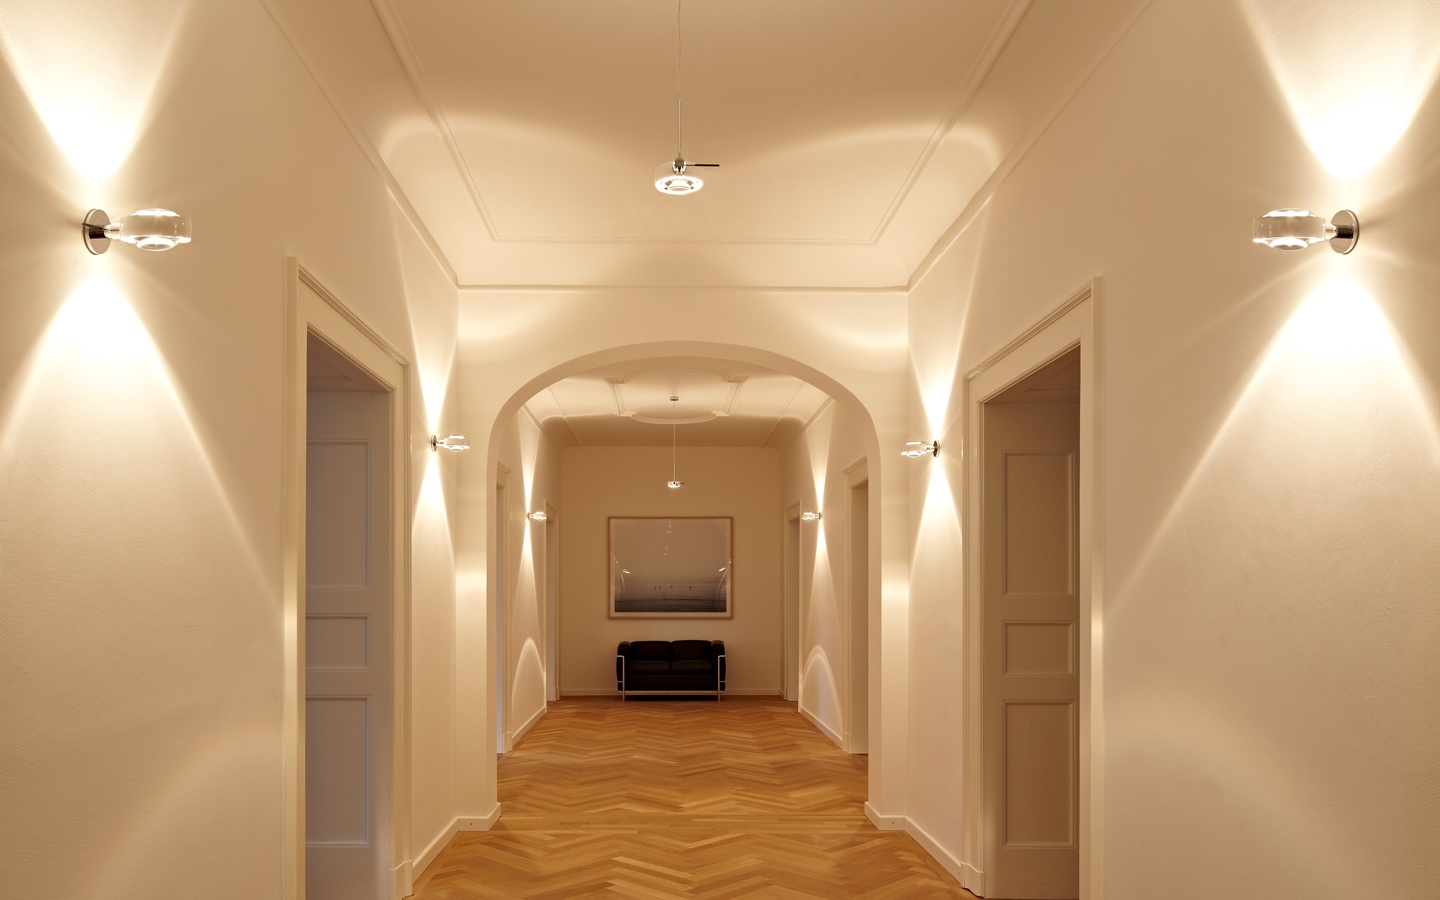 Wall hall. Коридор / Koridor (2022). Освещение в прихожей. Освещение в коридоре. Светильники в коридор и прихожую.